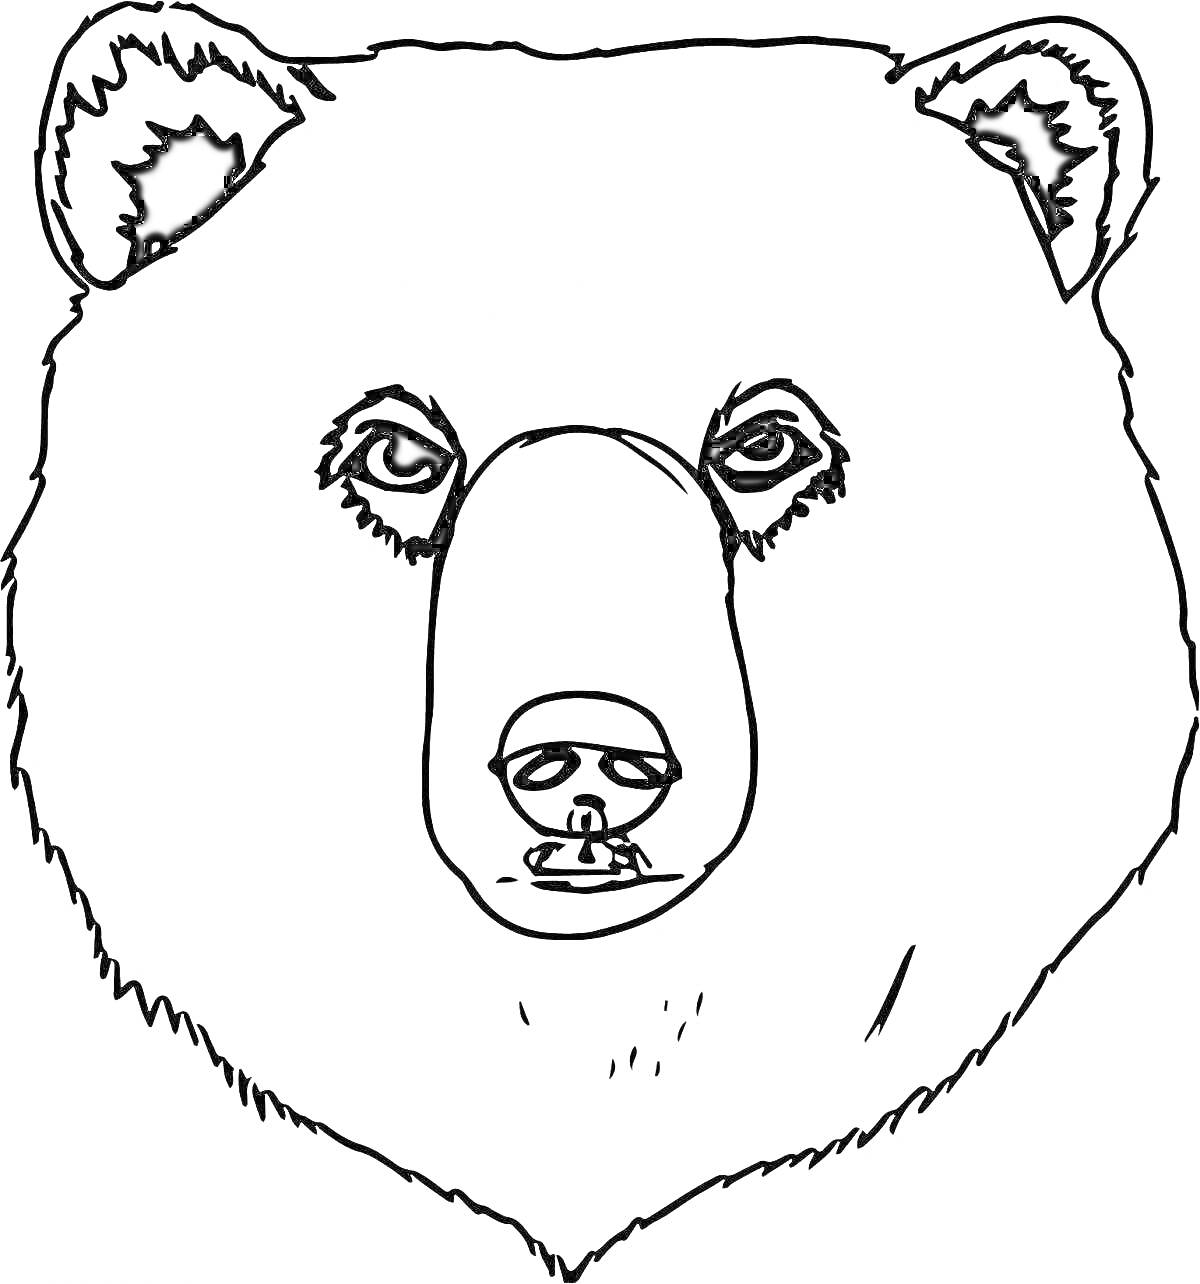 Раскраска Маска медведя (рисунок медвежьей головы с деталями лица и ушами)